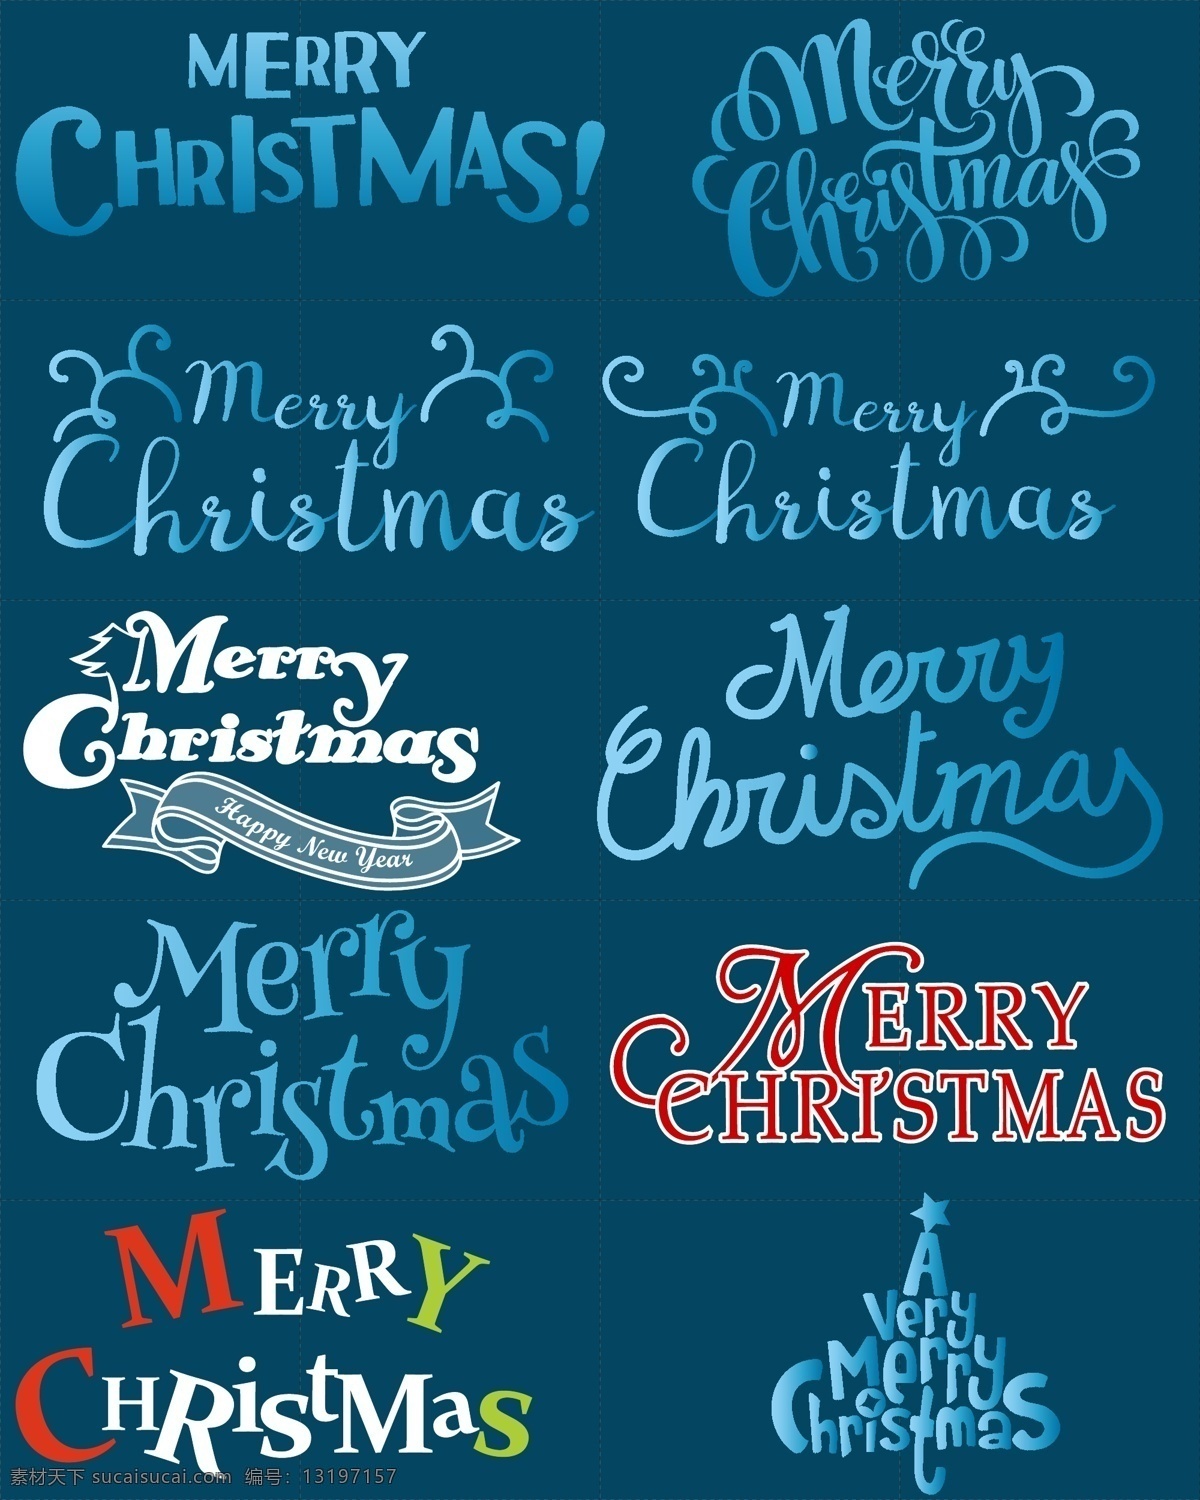 圣诞节英文 圣诞节字体 圣诞节快乐 矢量字体 创意圣诞节 圣诞节标题 圣诞节字母 圣诞节 文化艺术 节日庆祝